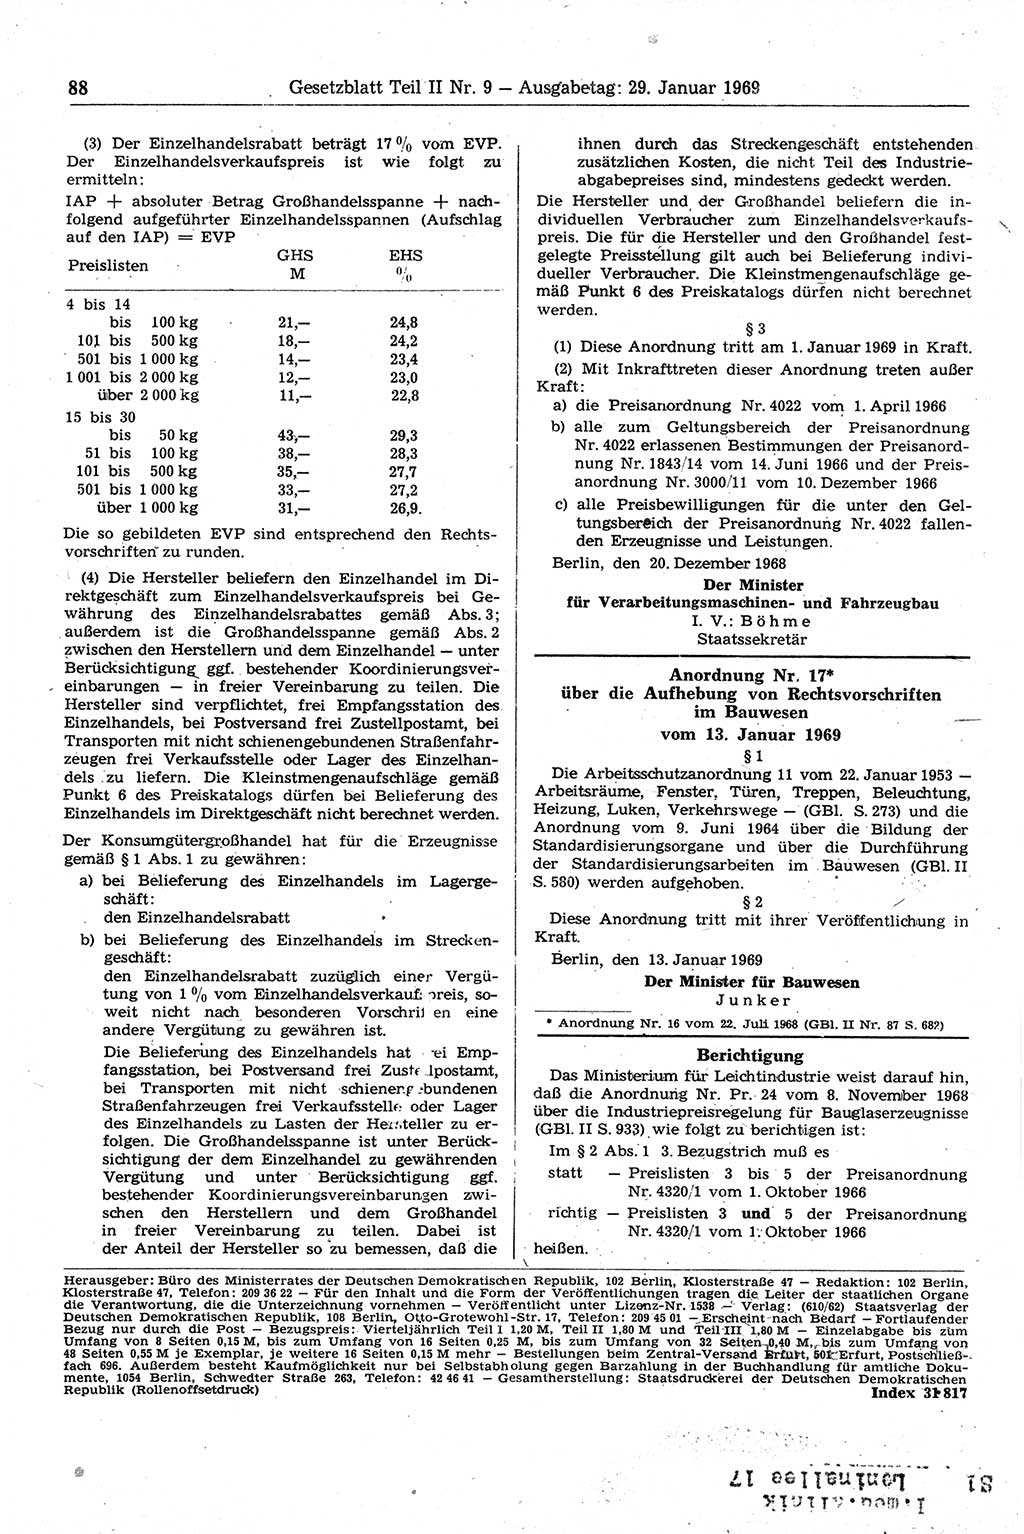 Gesetzblatt (GBl.) der Deutschen Demokratischen Republik (DDR) Teil ⅠⅠ 1969, Seite 88 (GBl. DDR ⅠⅠ 1969, S. 88)